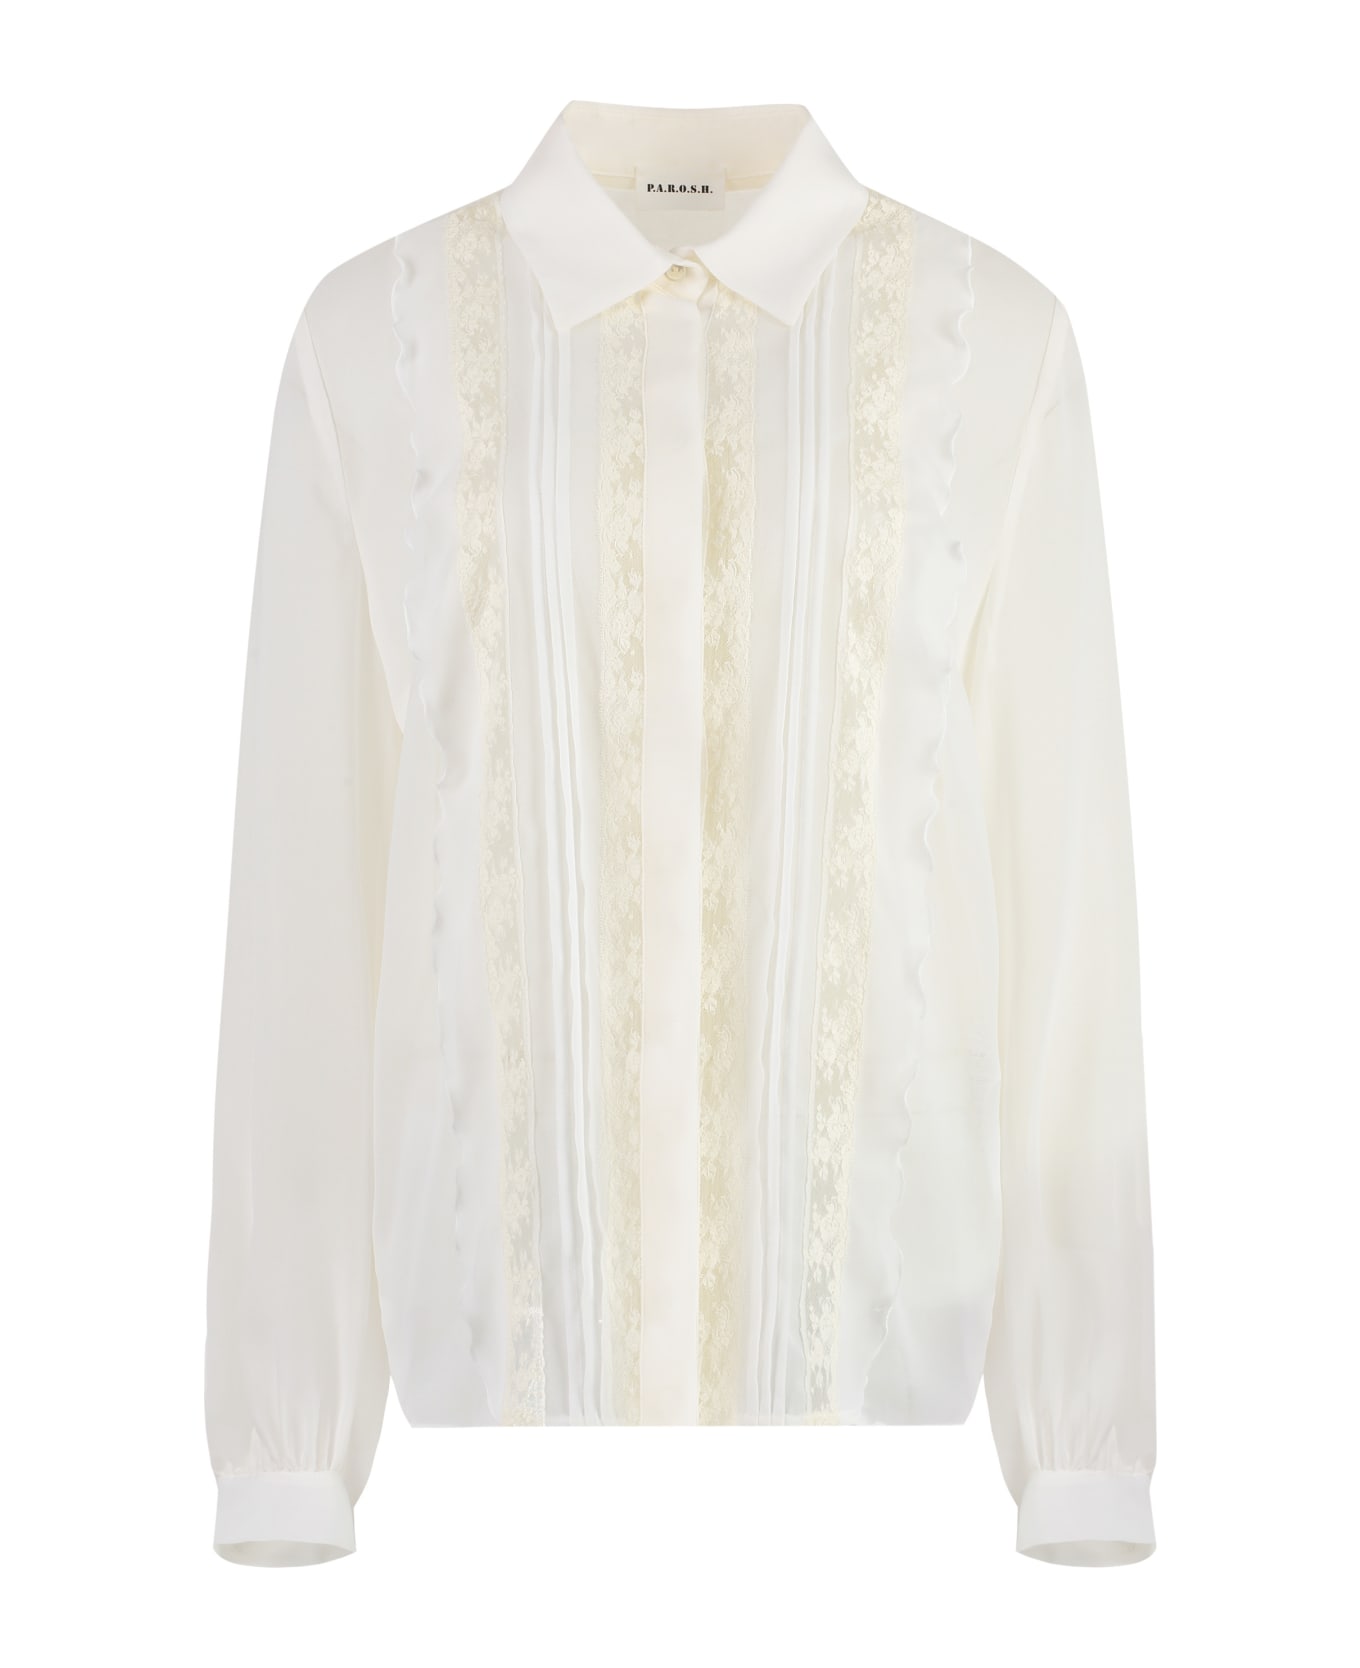 Parosh Technical Fabric Shirt - White ブラウス